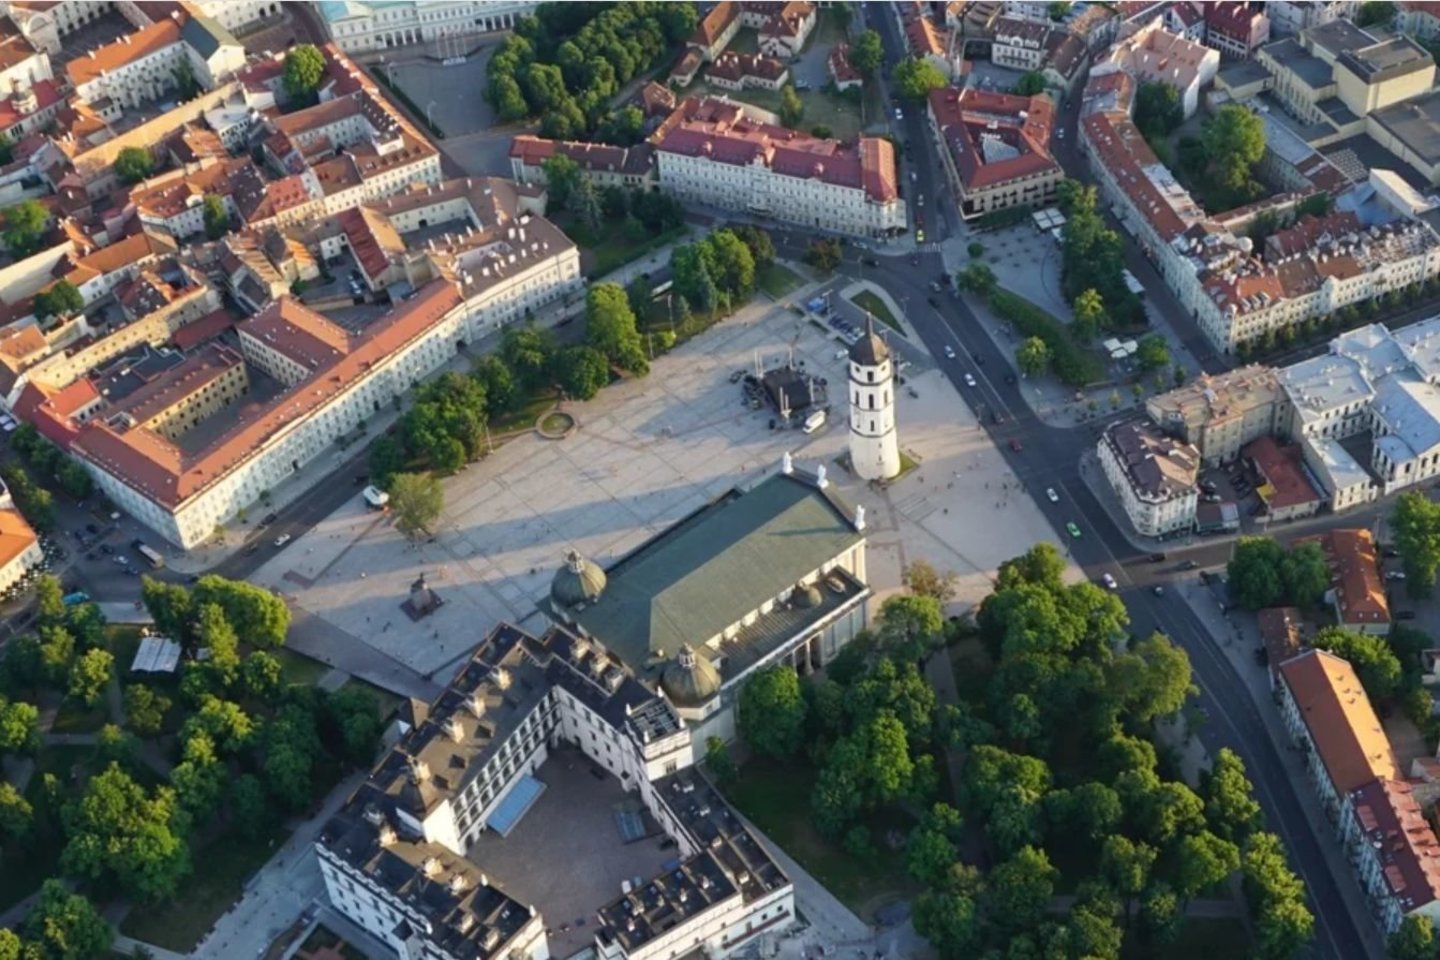  Vilniaus centras virs didele meno galerija po atviru dangumi.<br>Organizatorių nuotr.